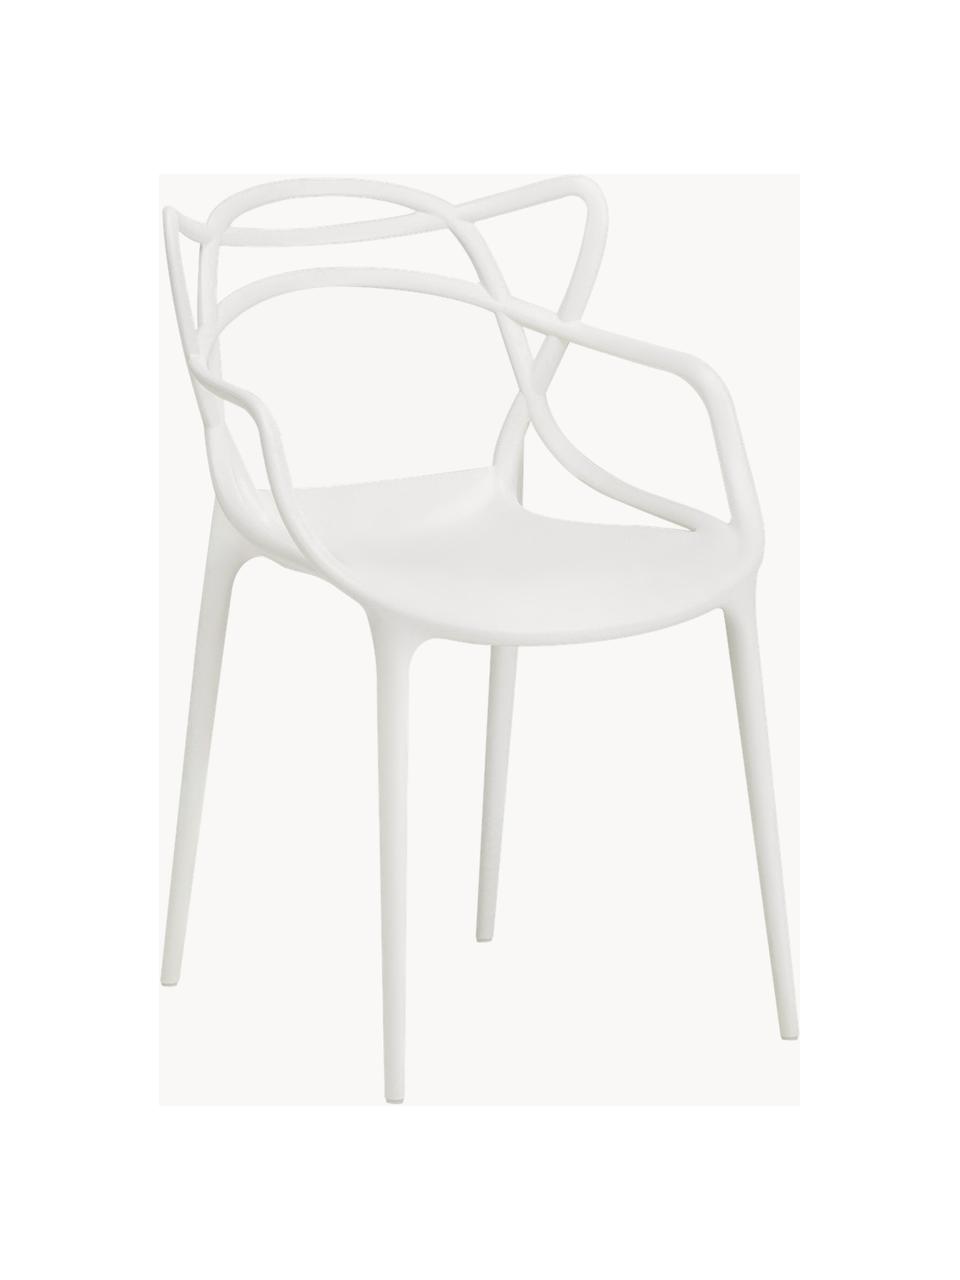 Chaises à accoudoirs design Masters, 2 pièces, Polypropylène, certifié Greenguard, Blanc, larg. 57 x haut. 84 cm